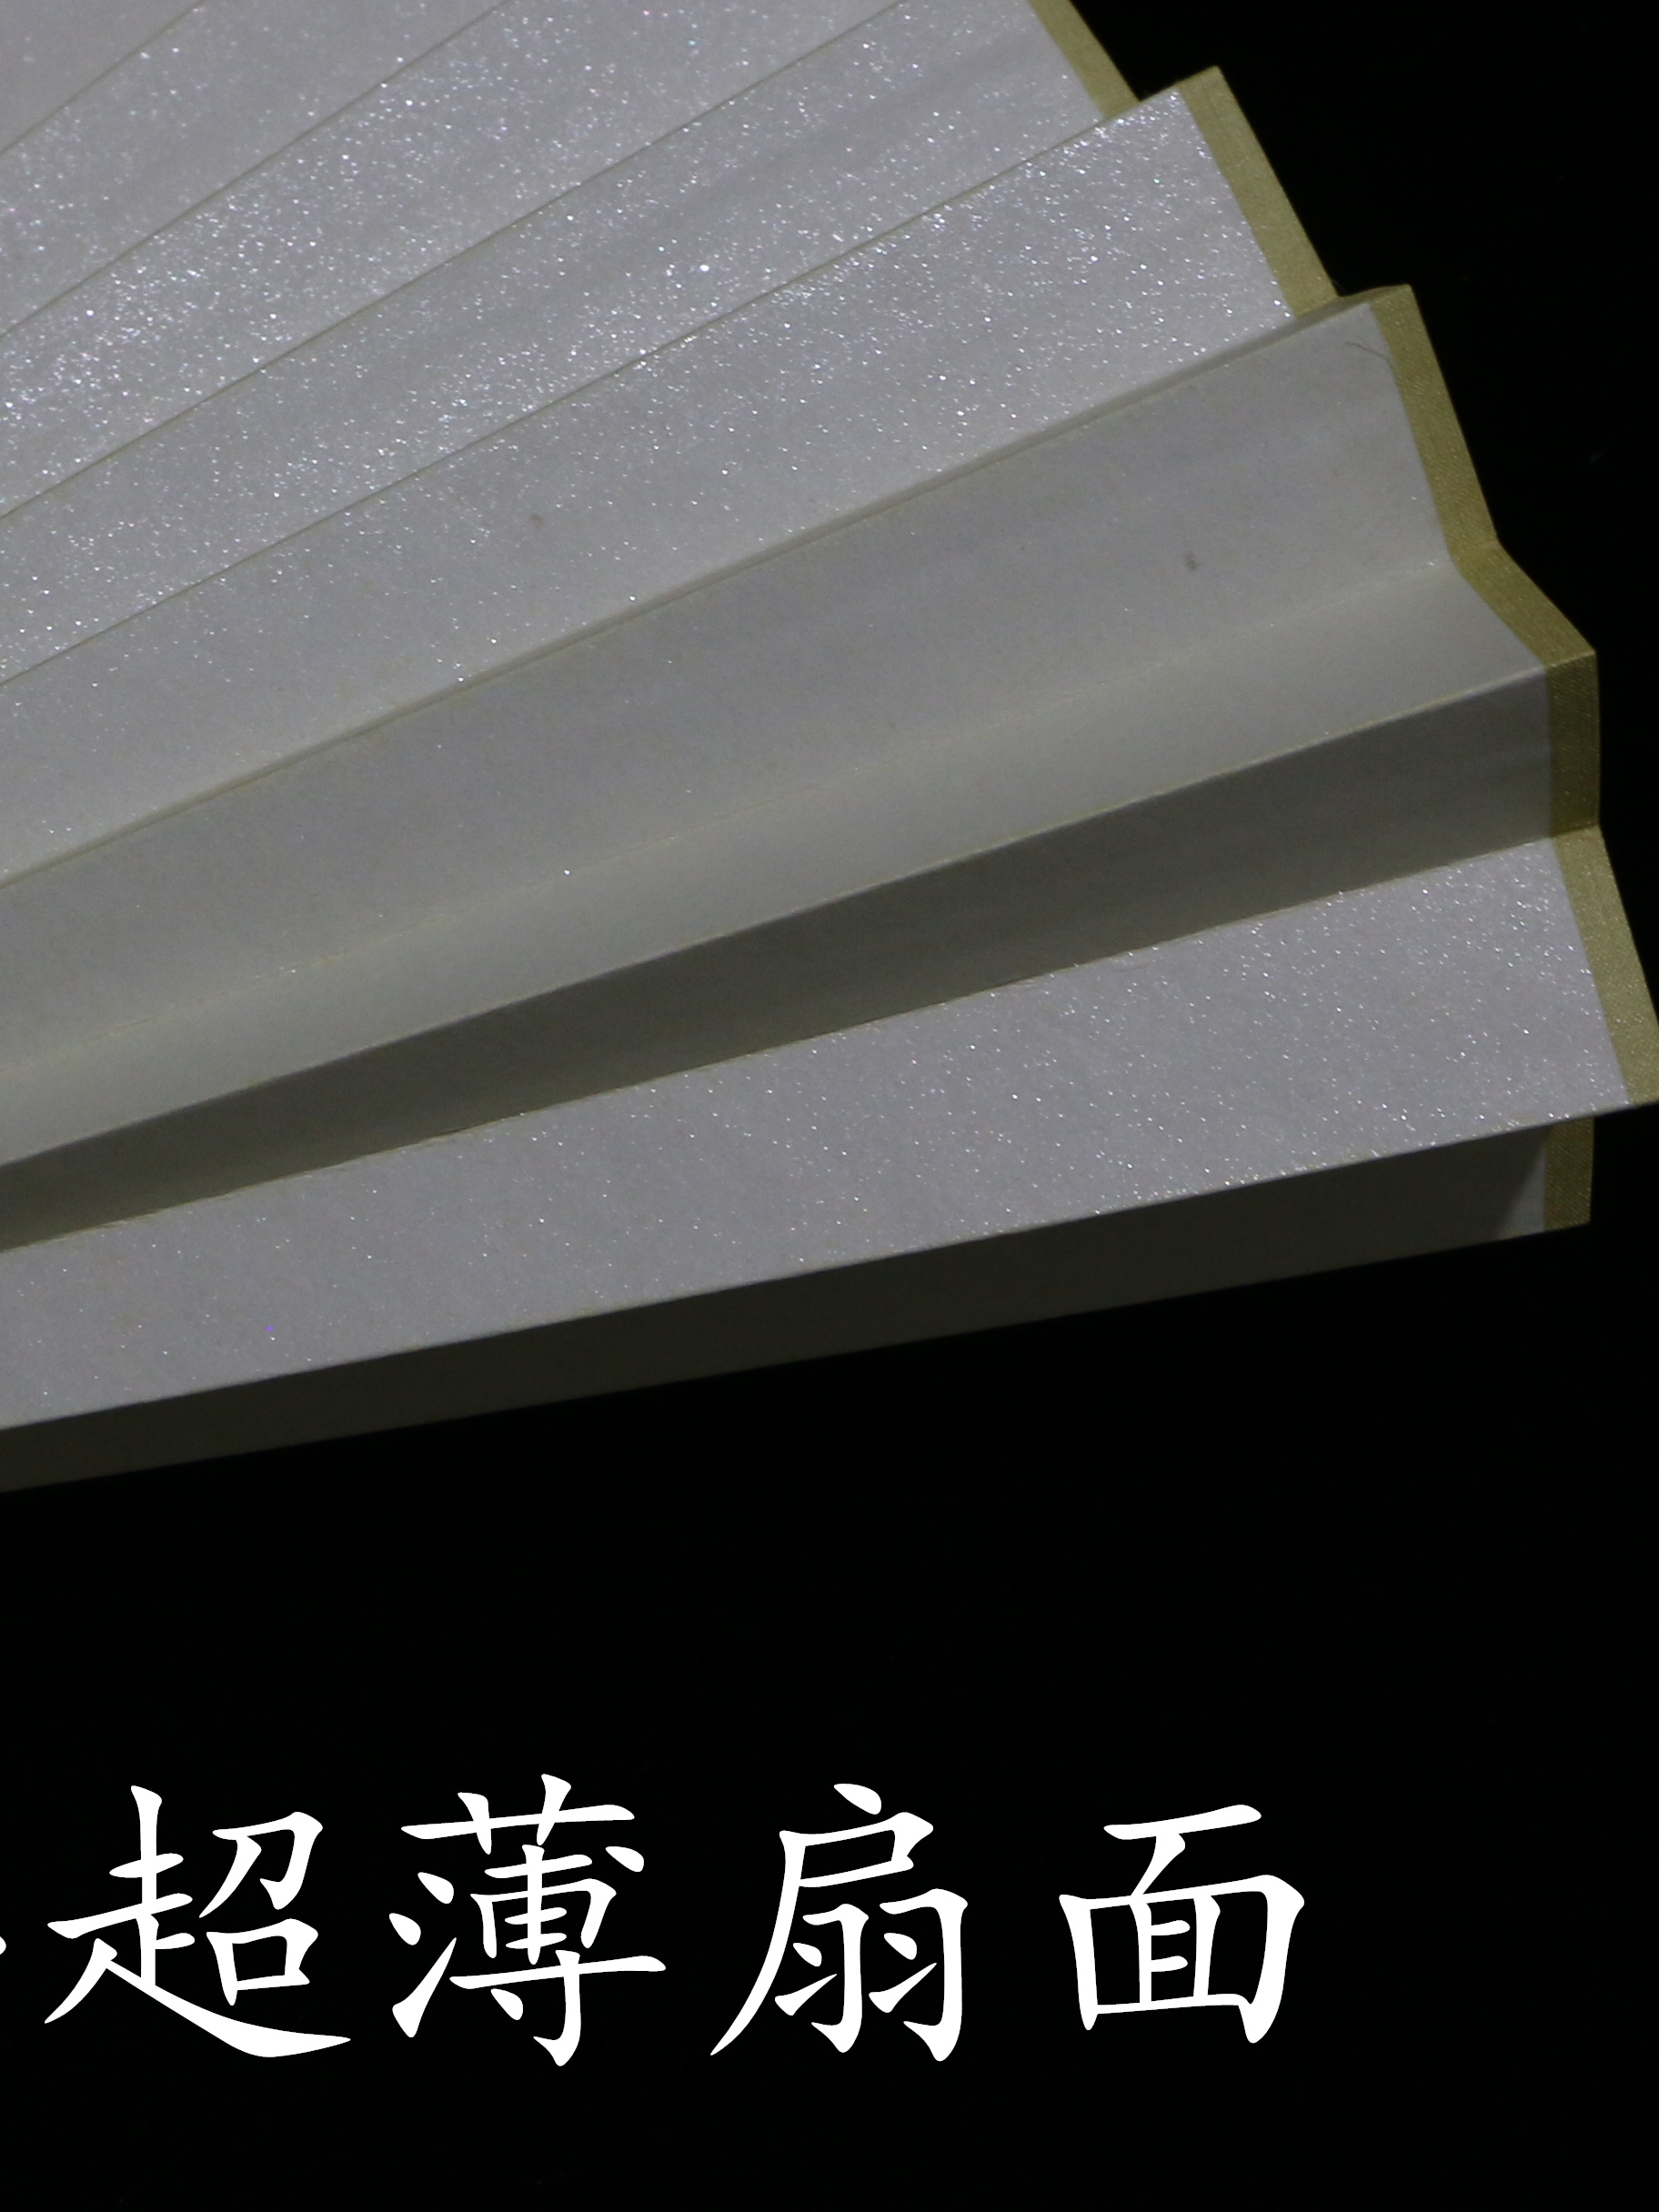 7-10寸苏州传统工艺熟宣扇面纸高档扇子用 薄整齐韧性好耐用